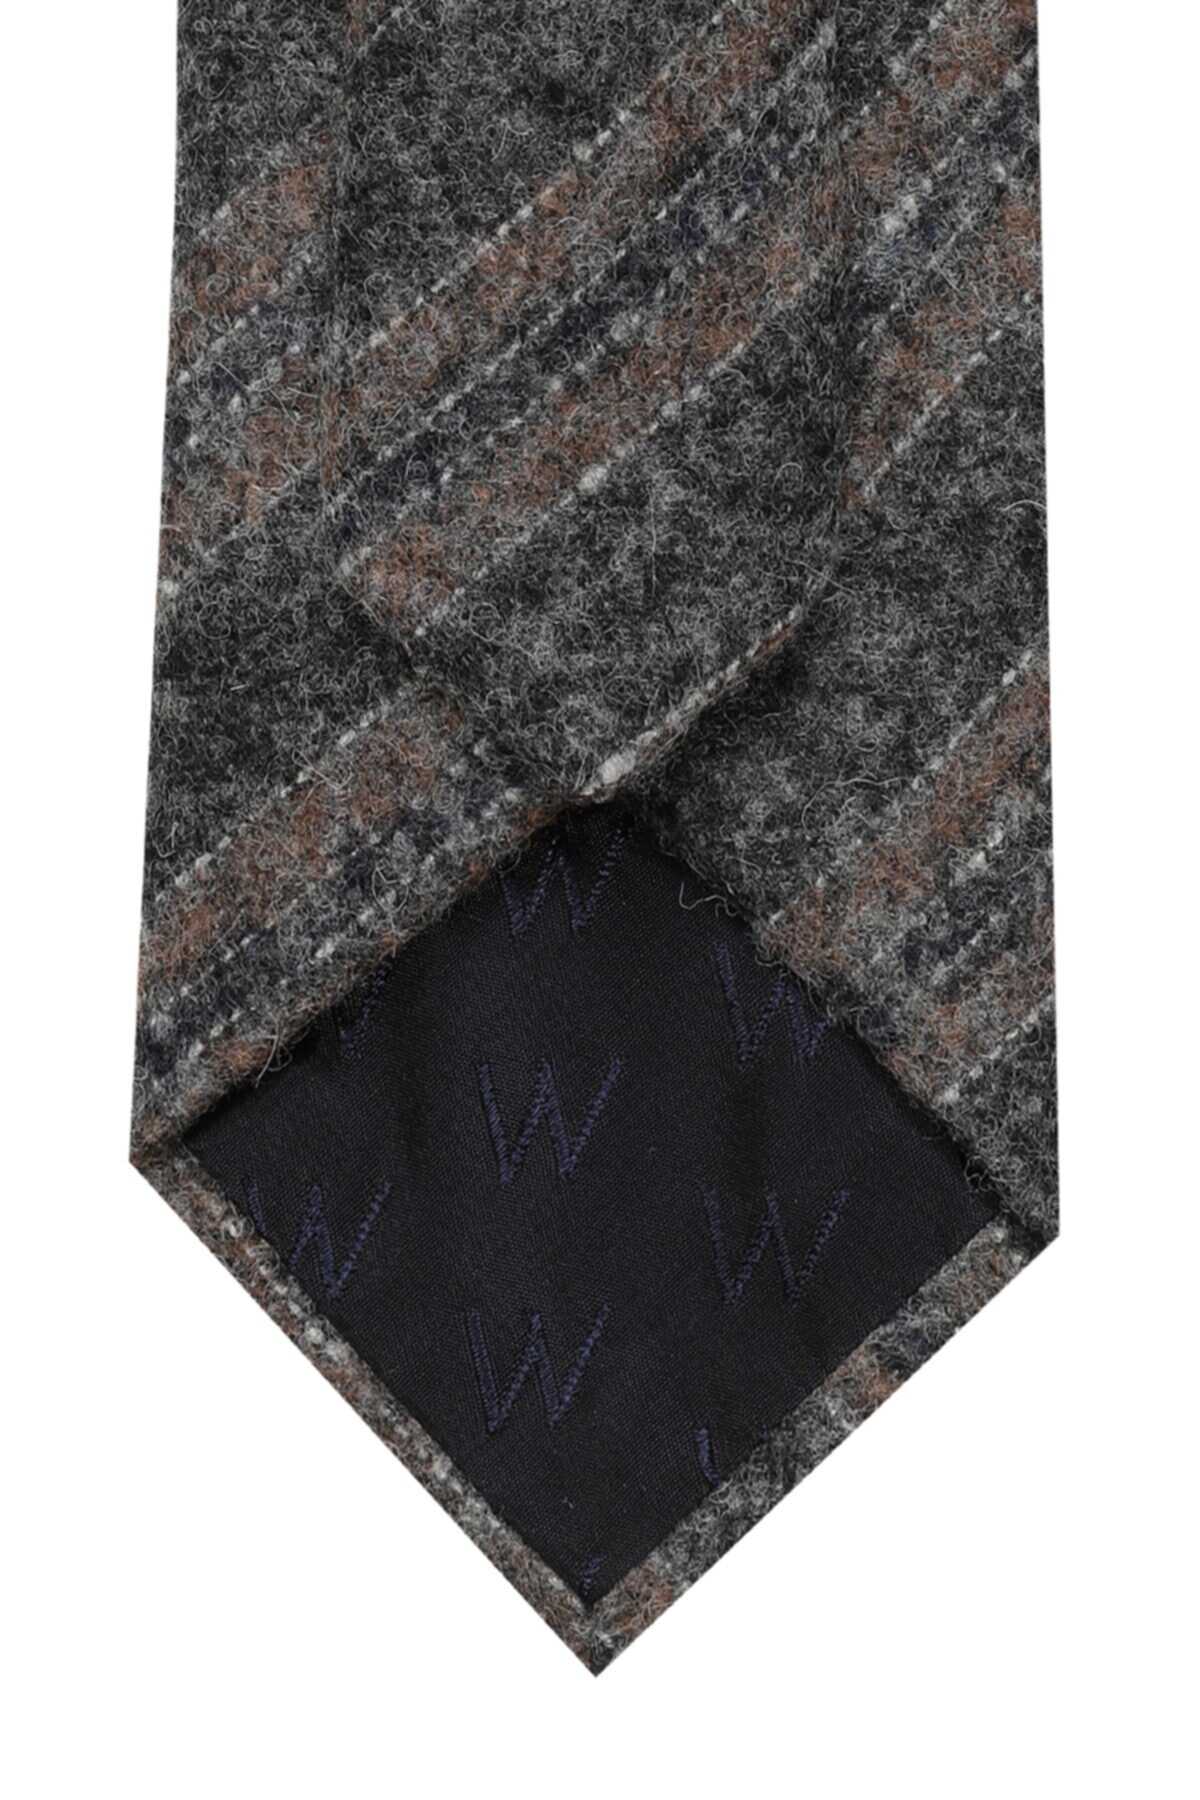 کراوات پشمی راه راه مردانه خاکستری برند W Collection 